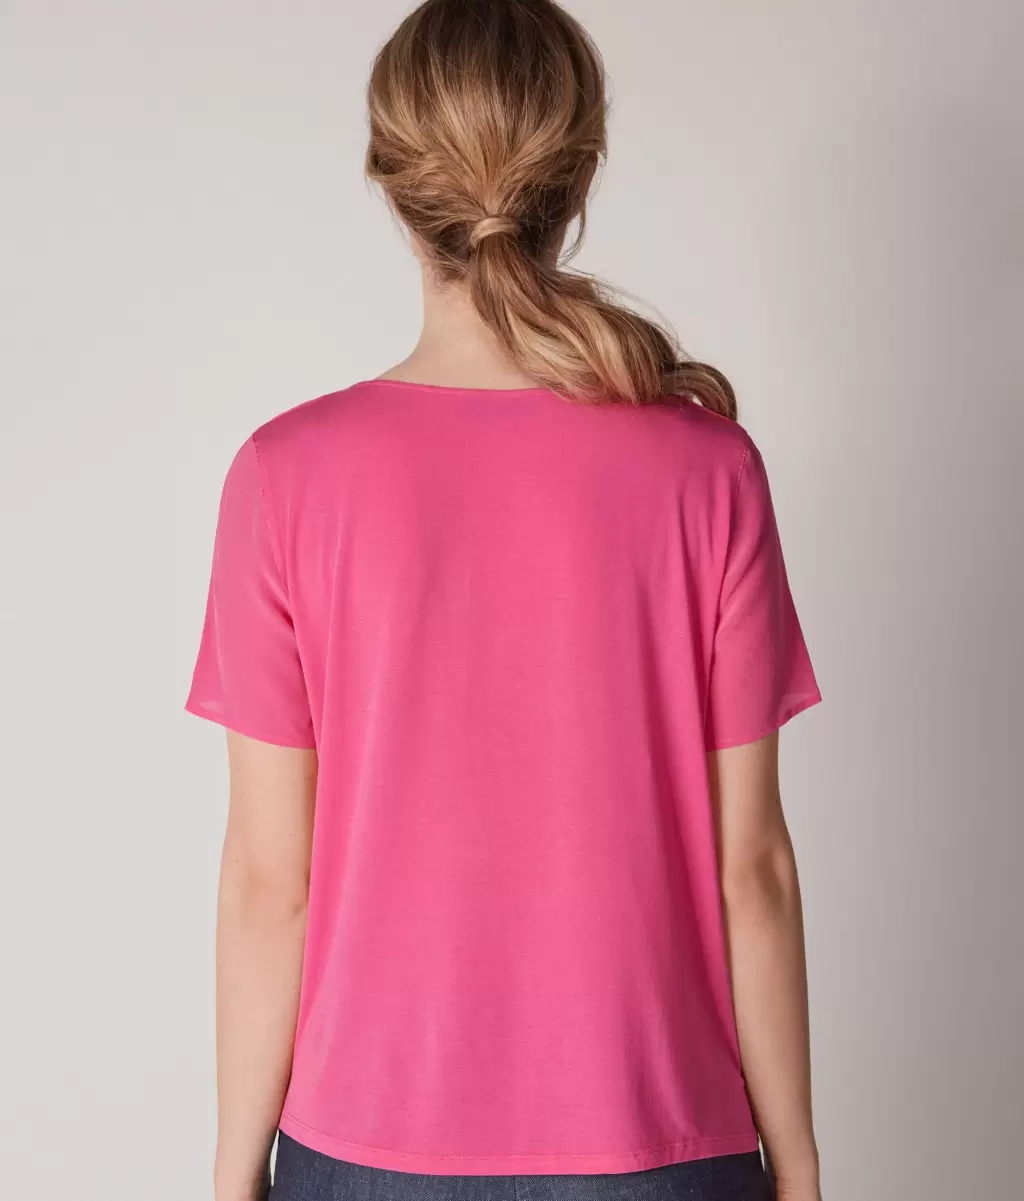 Topy I T-Shirty Kobieta Jedwabna Koszulka Z Okrągłym Dekoltem Falconeri Pink - 2